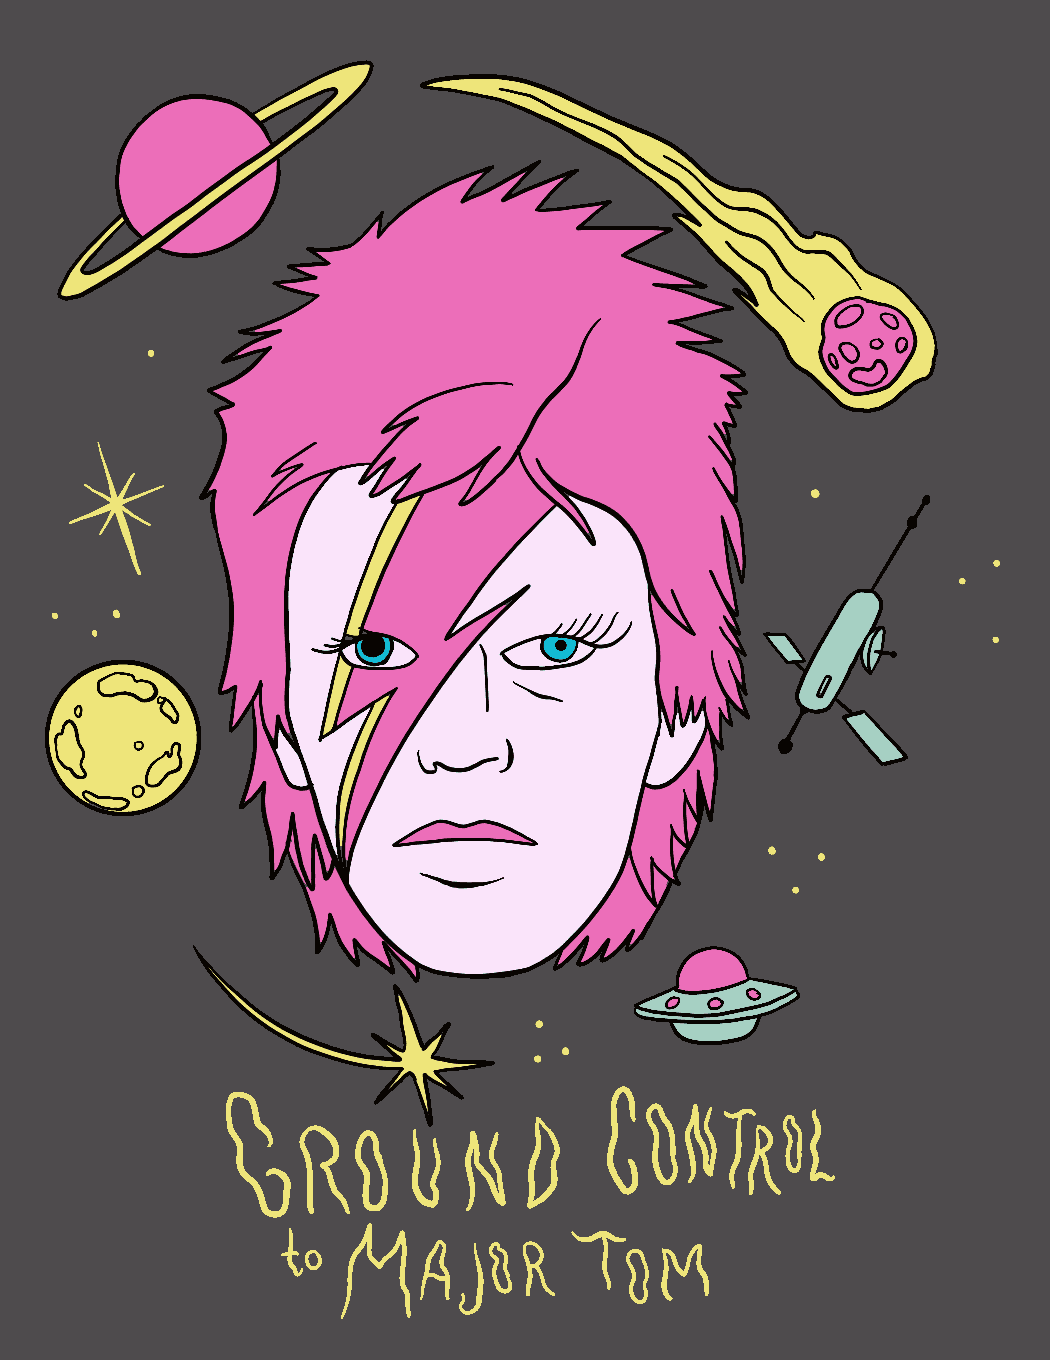 David Bowie GIF by Major Tom